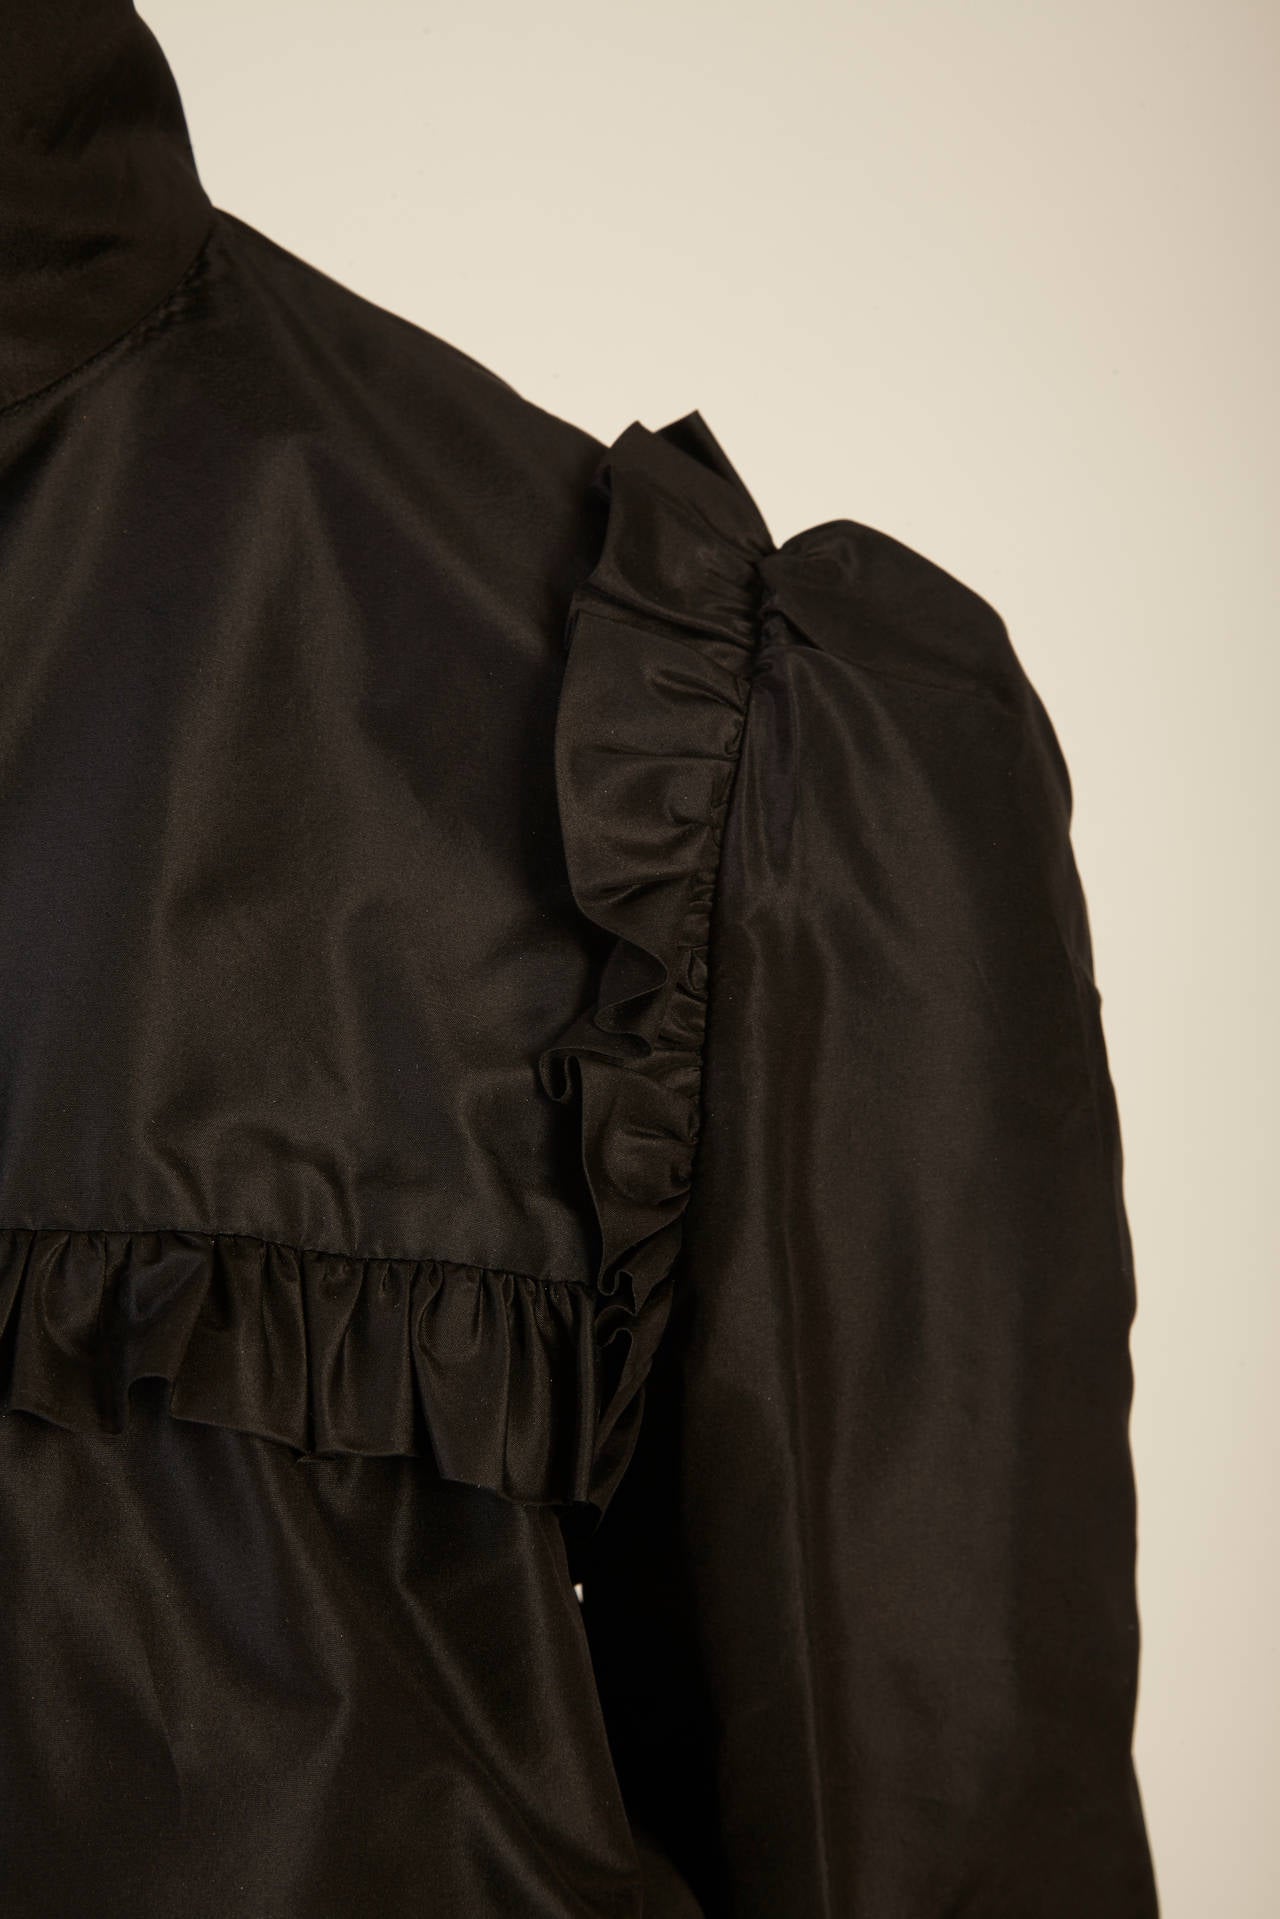 Women's 2007 Chanel Black Silk Ruffled Jacket